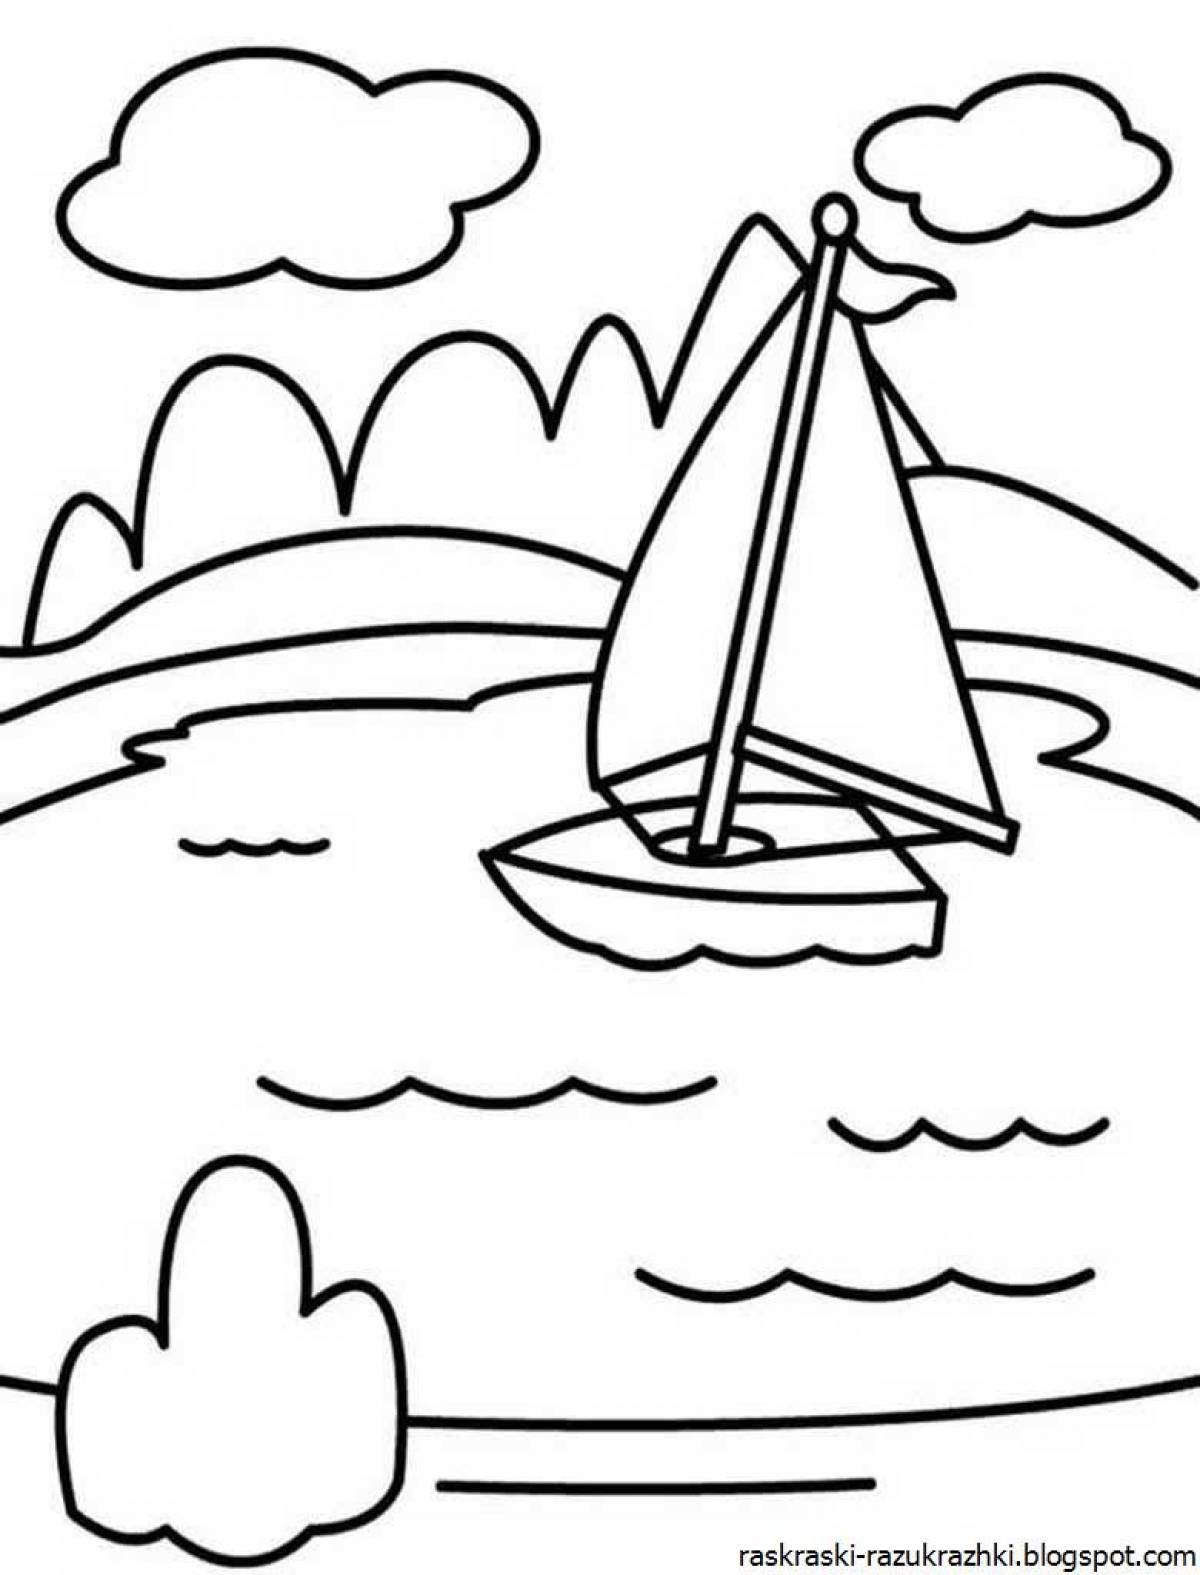 Раскраска водой картинка. В море. Раскраска. Море раскраска для детей. Кораблик на море раскраска для детей. Раскраска Маре для детей.